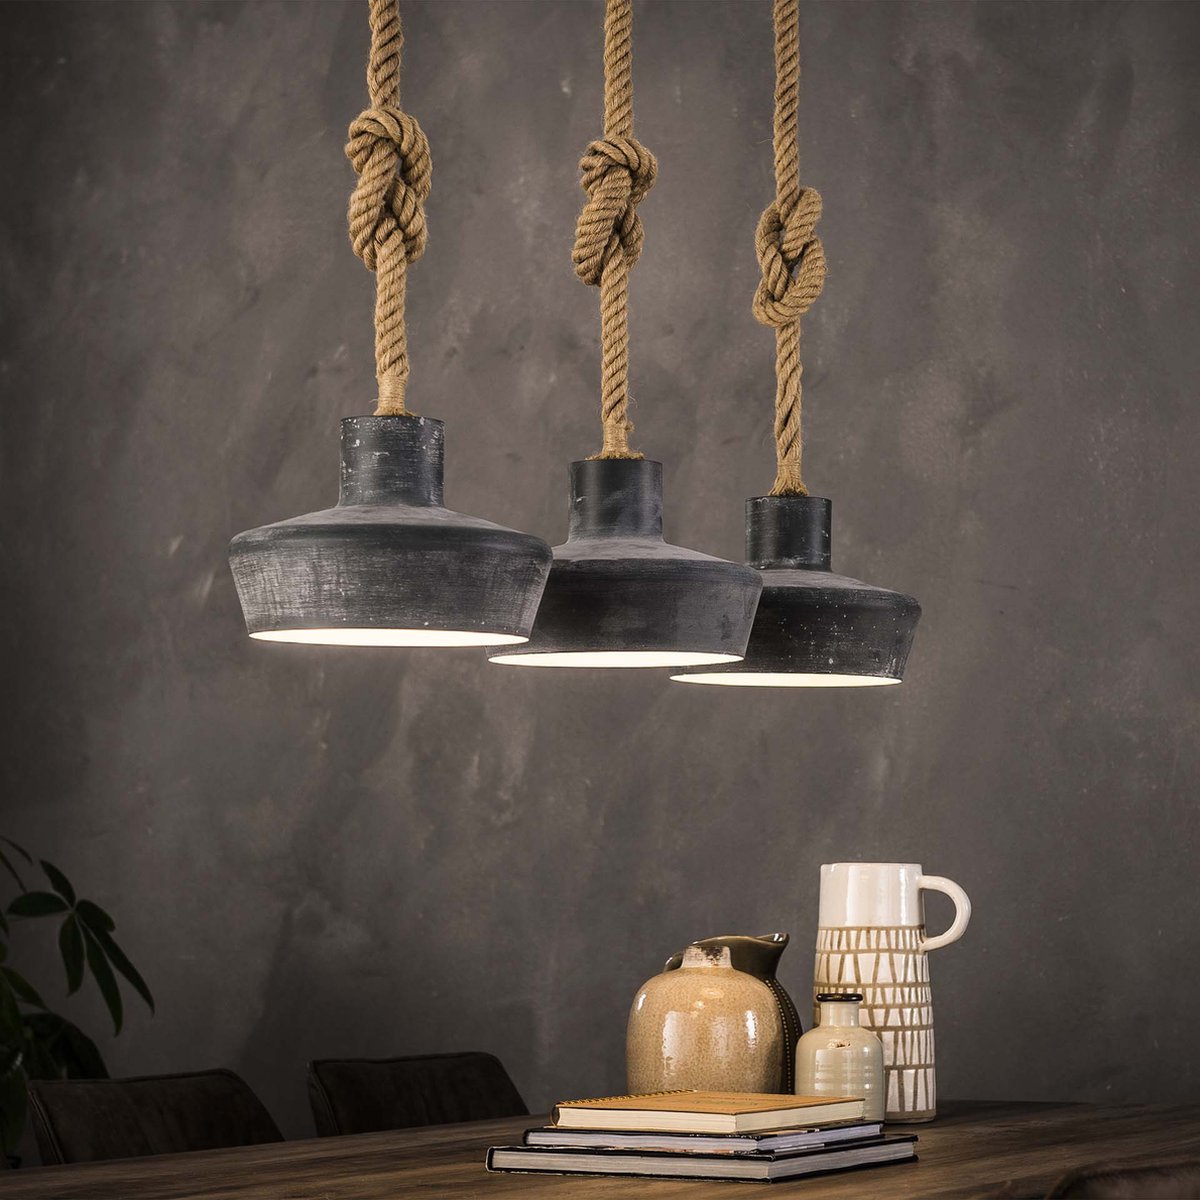 Hanglamp betonlook verstelbaar touw | 3 lichts | zwart / bruin | ⌀ 28 cm | eetkamer / eettafel lamp | modern / sfeervol design